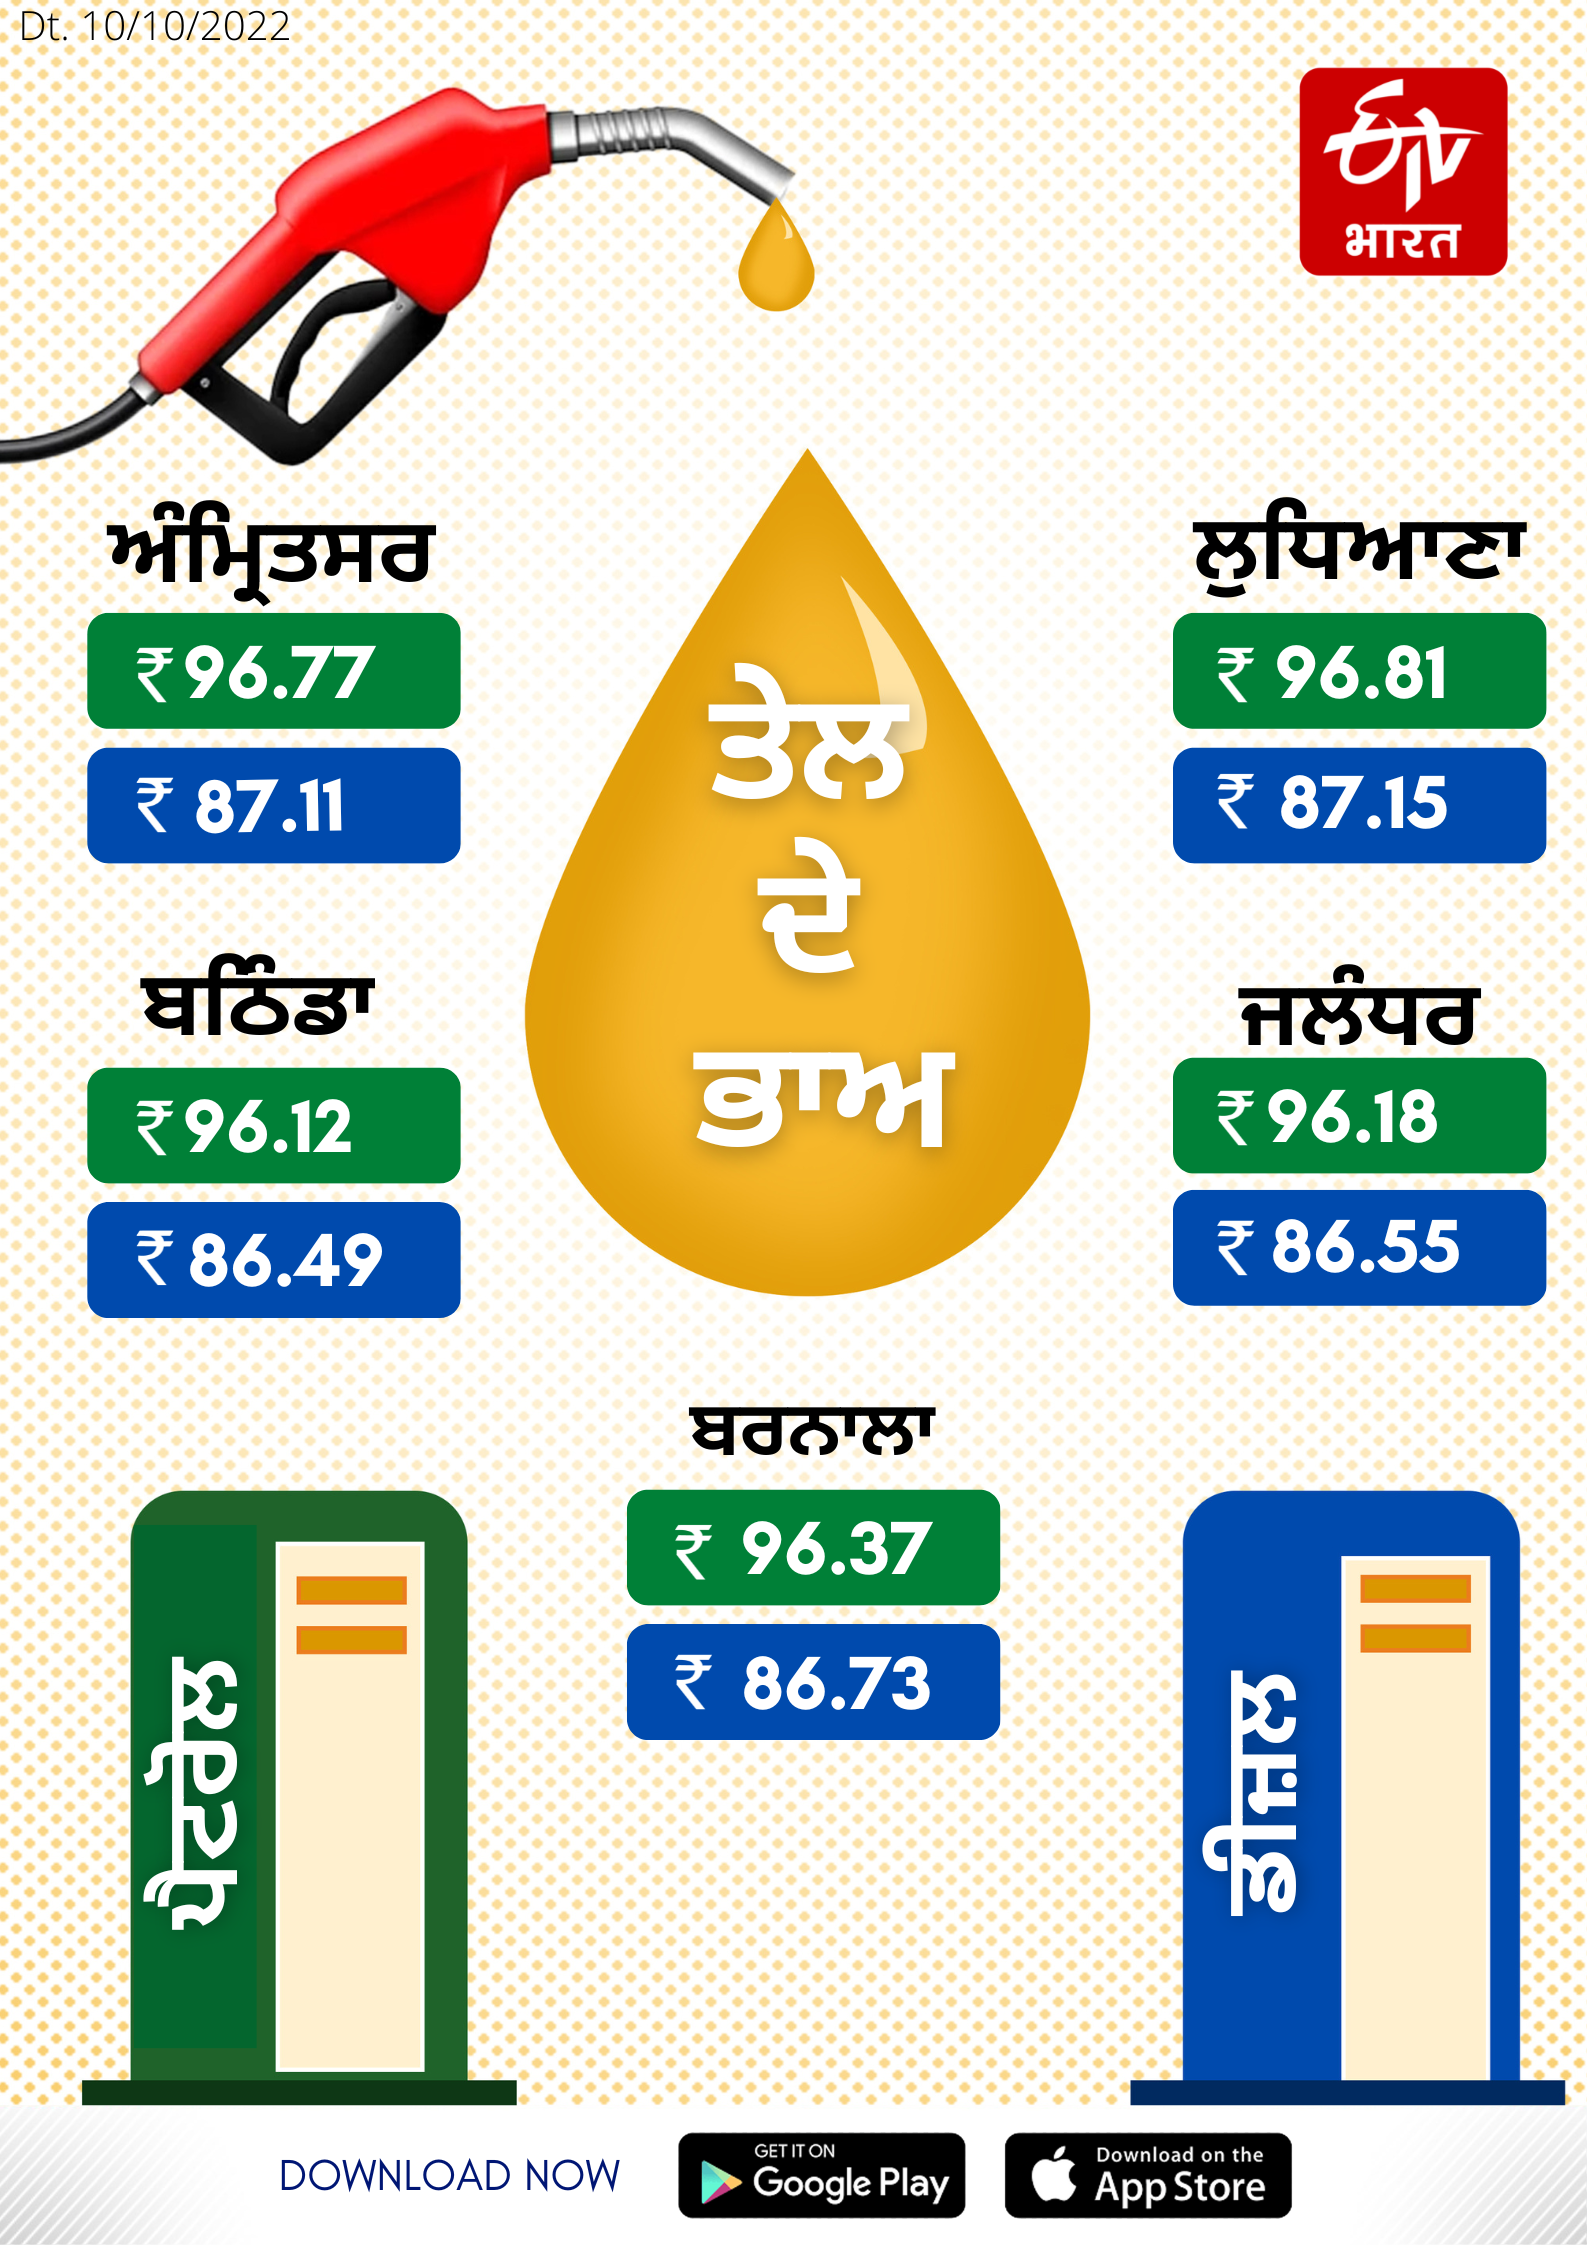 Petrol and diesel update rates